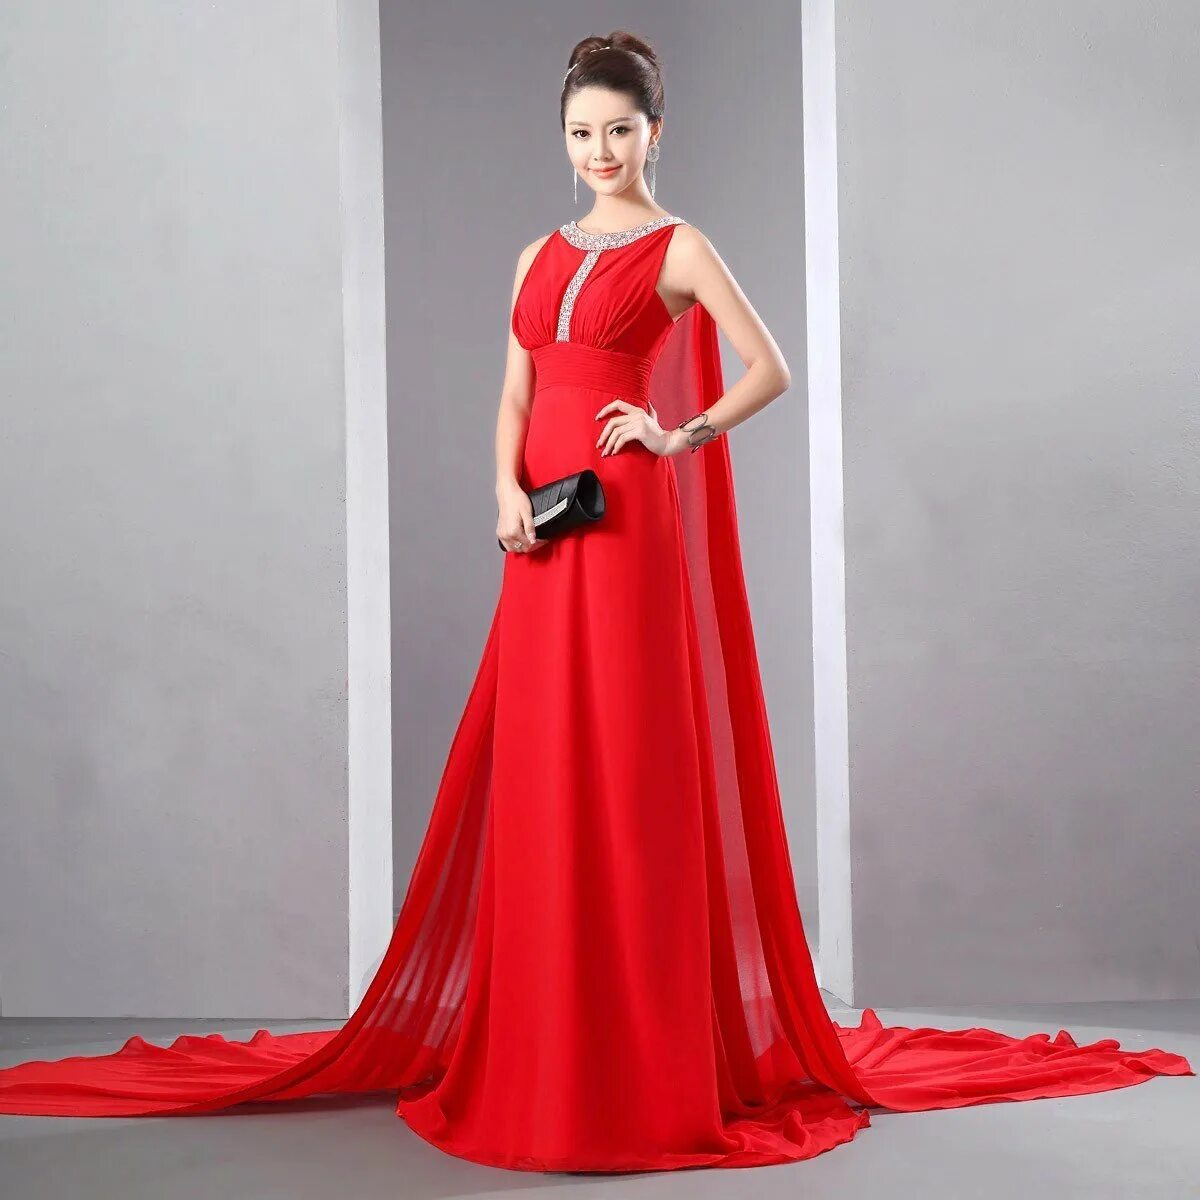 Красное платье. Красивое красное платье. Длинное платье. Красивые красные платья вечерние.